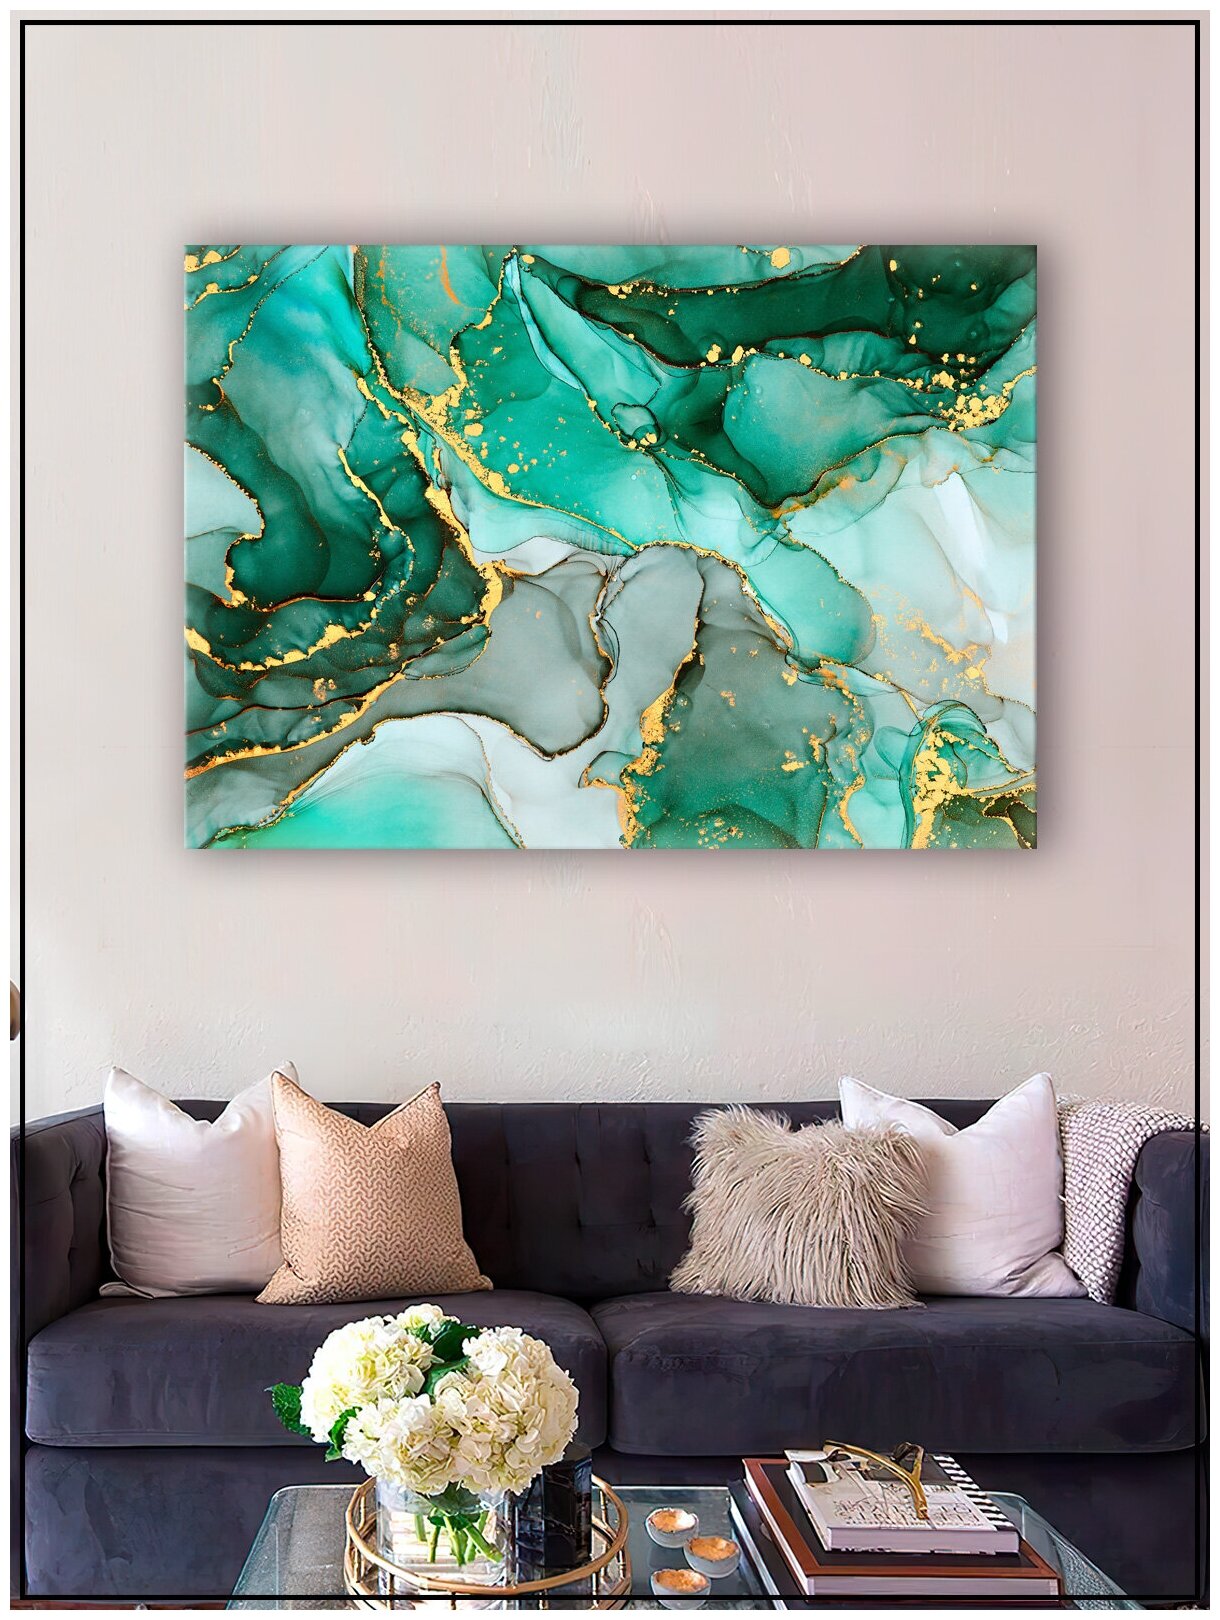 Картина для интерьера на натуральном хлопковом холсте "Абстракция зеленый мрамор", 30*40см, холст на подрамнике, картина в подарок